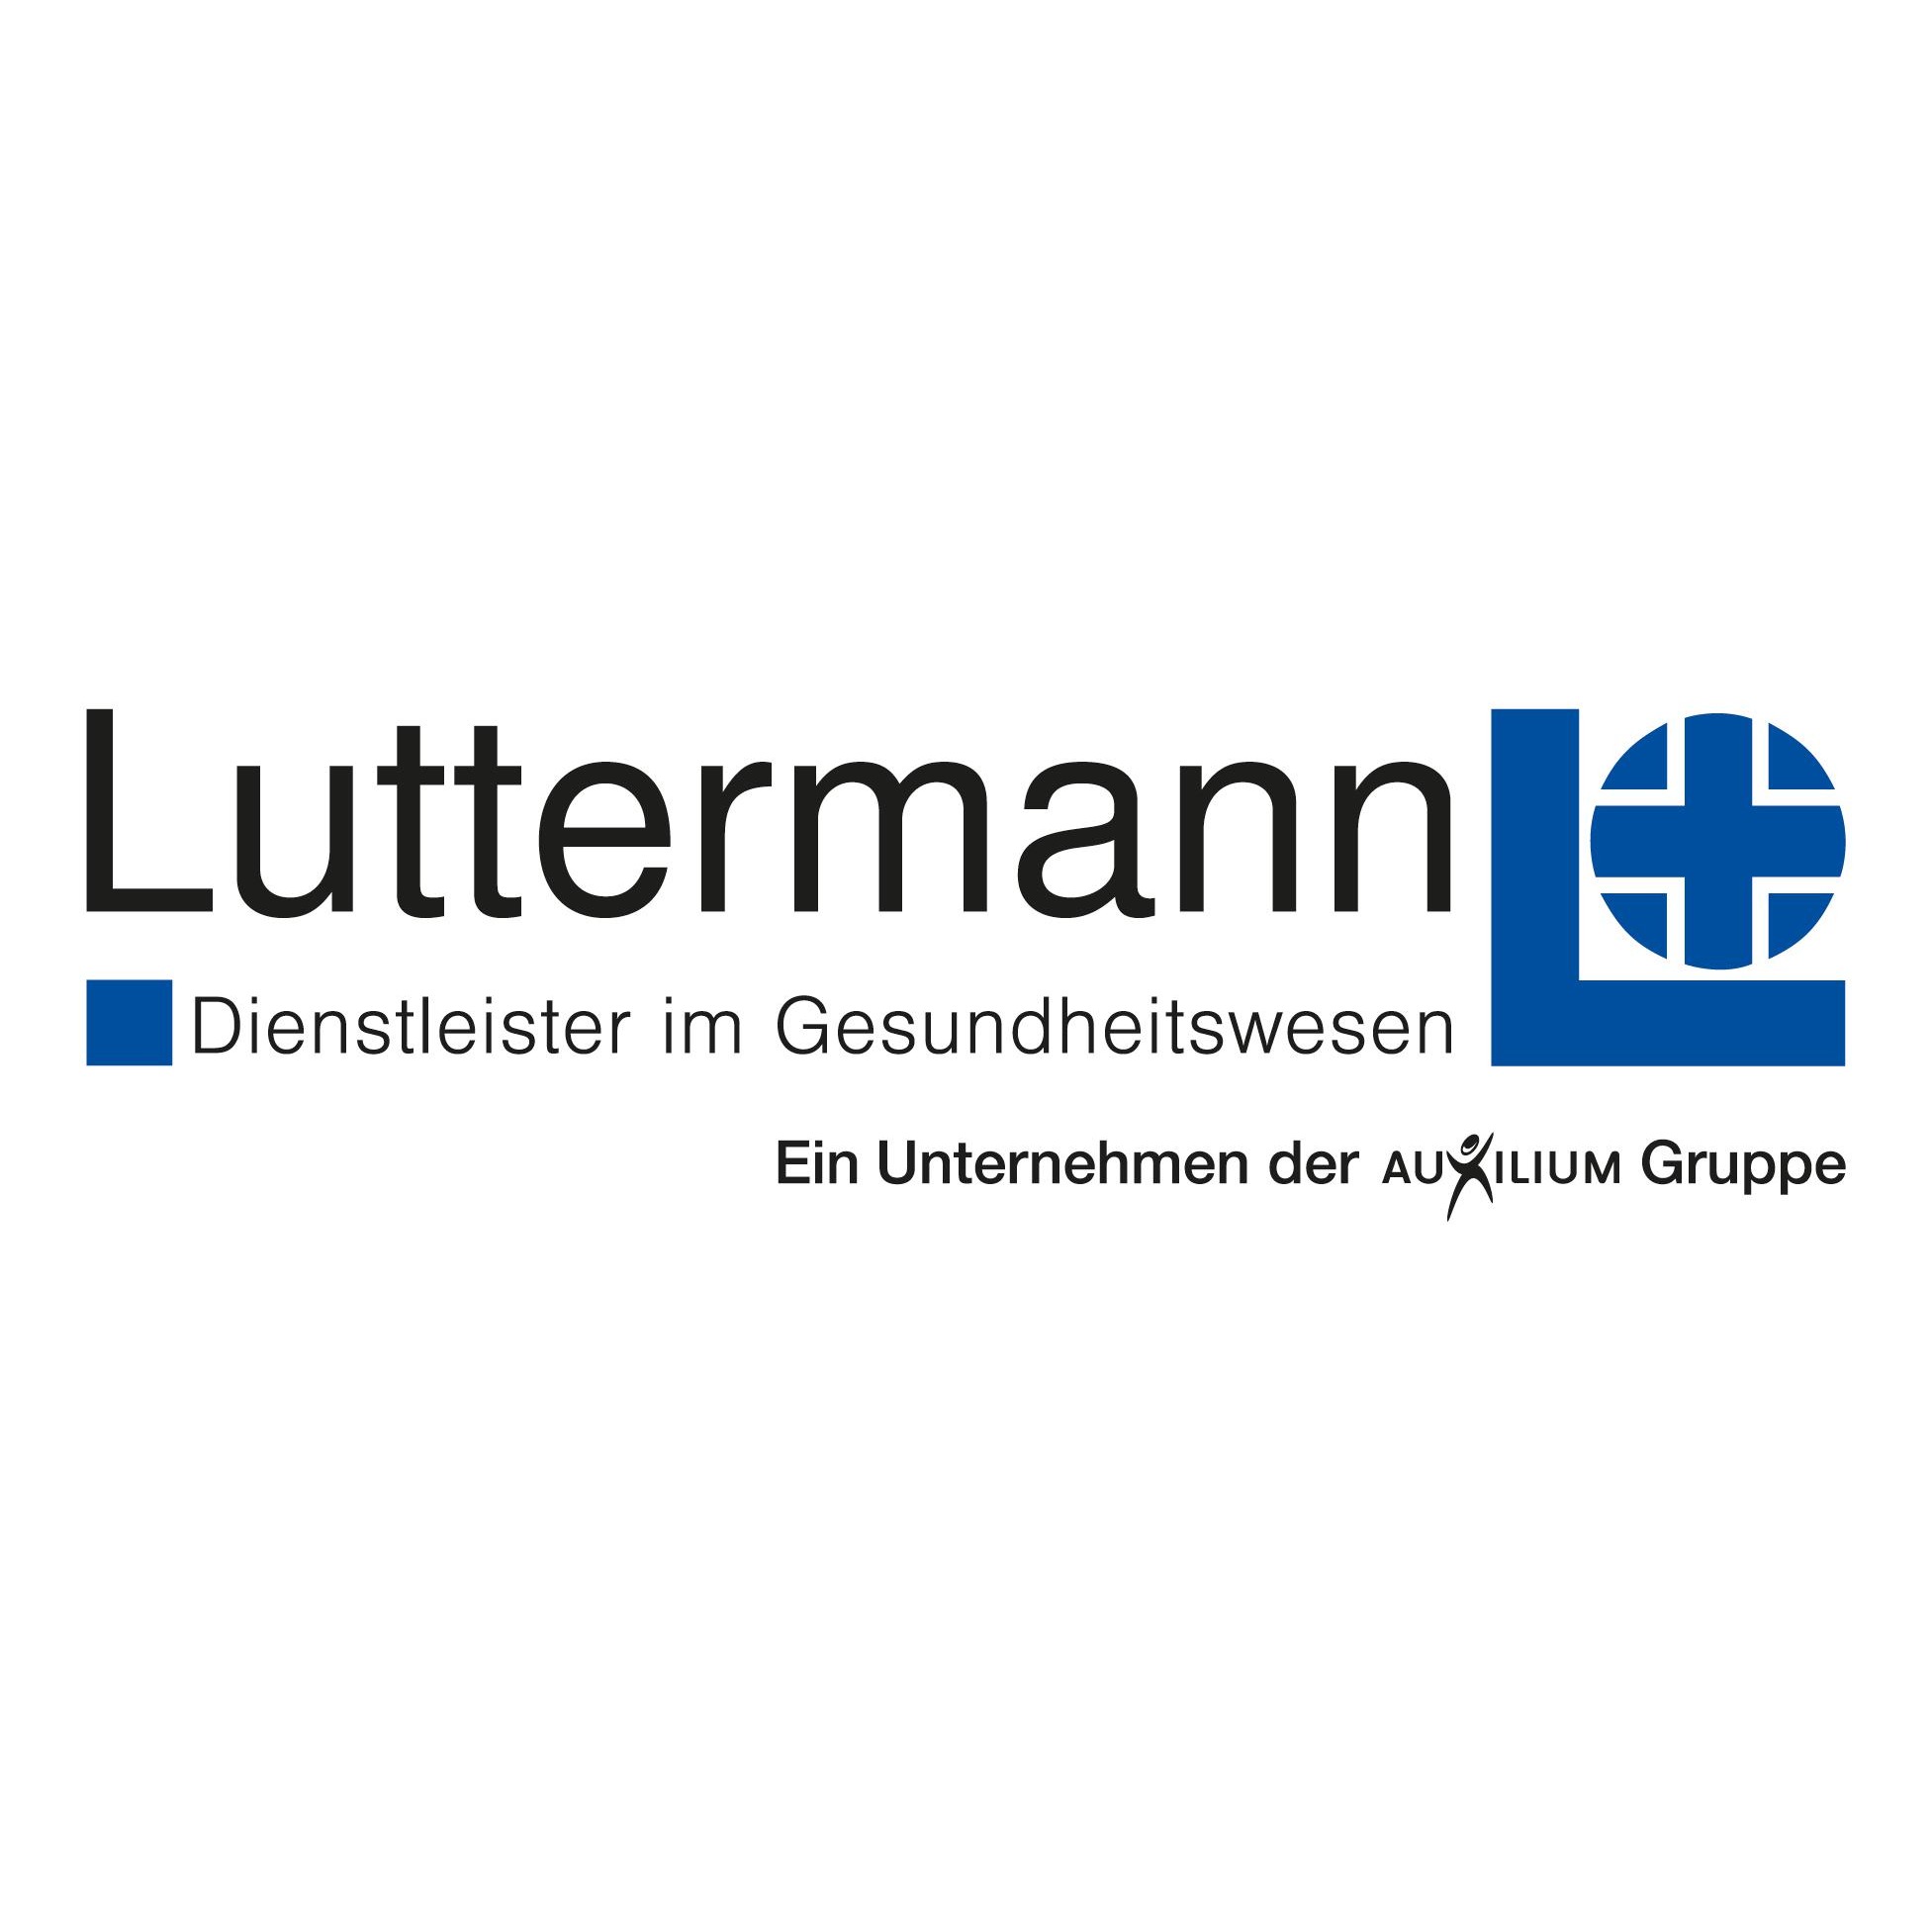 Luttermann GmbH in Essen - Logo